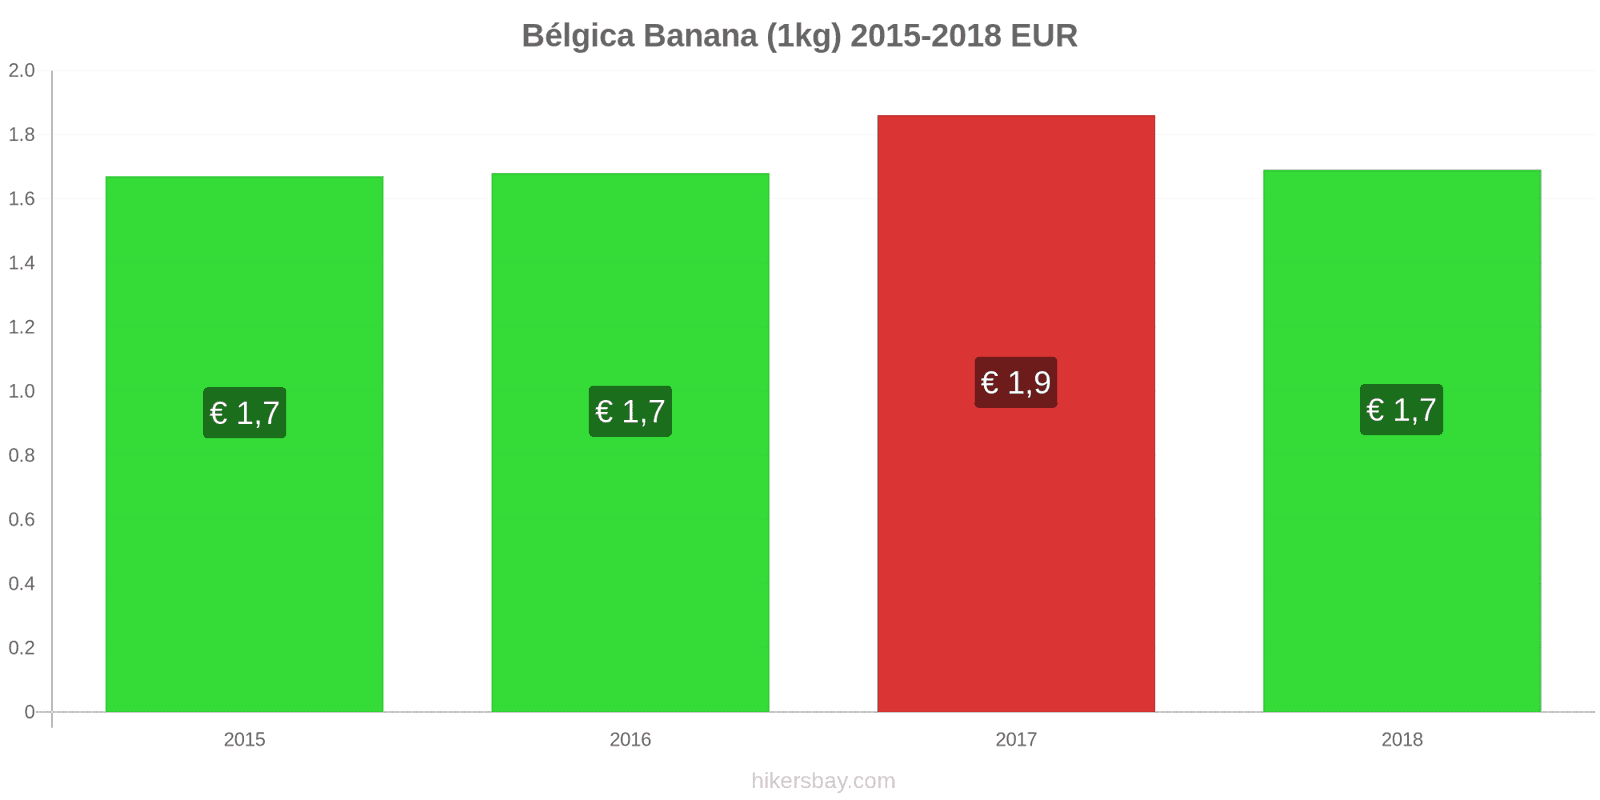 Bélgica mudanças de preços Bananas (1kg) hikersbay.com